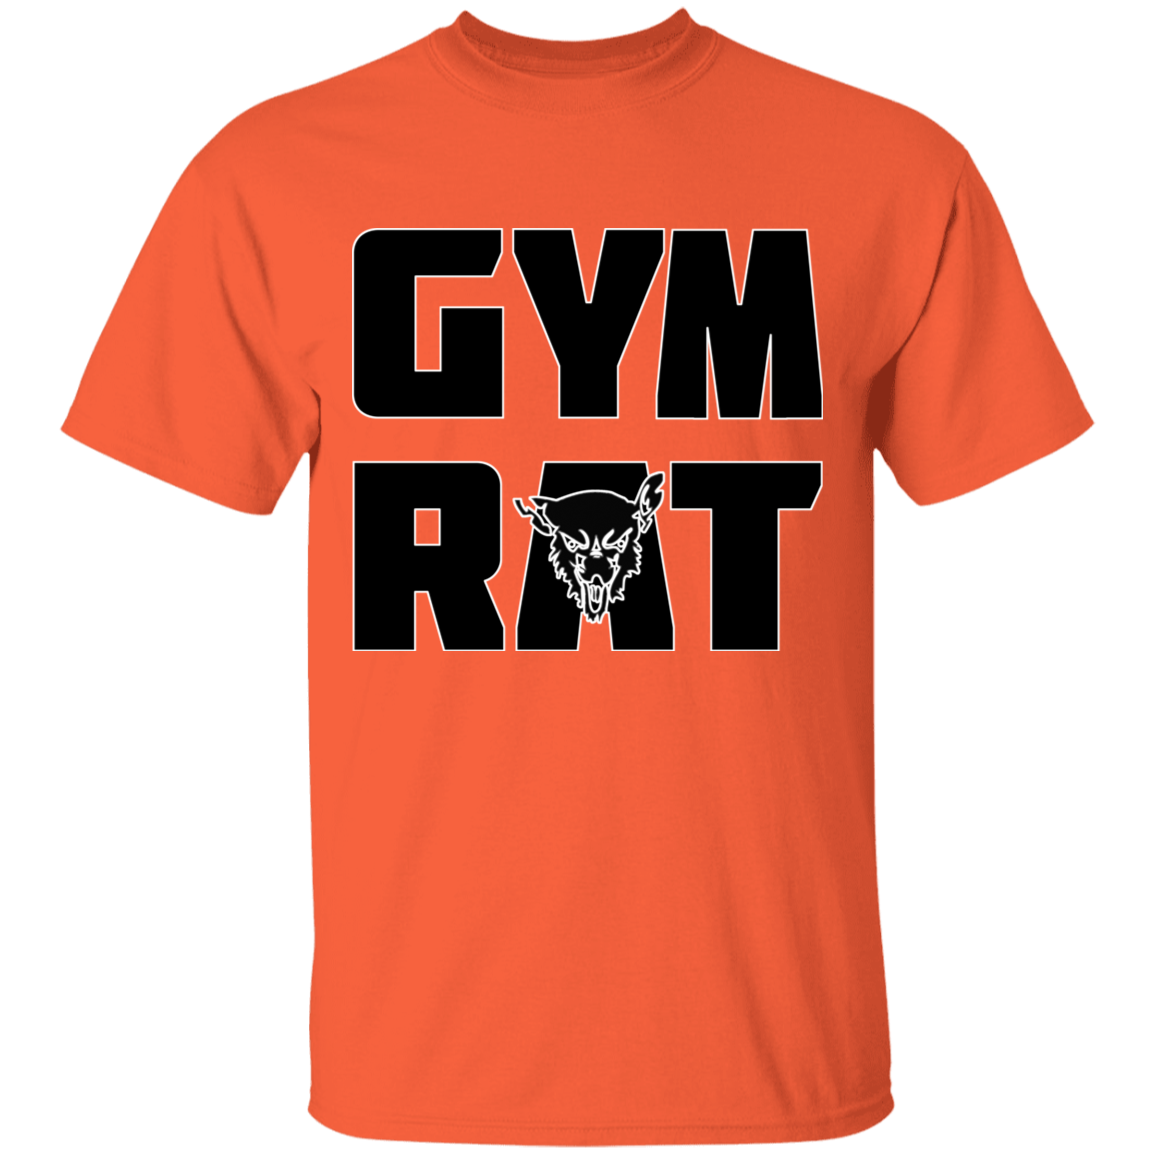  #GYMRAT Gym Rat Camiseta : Ropa, Zapatos y Joyería